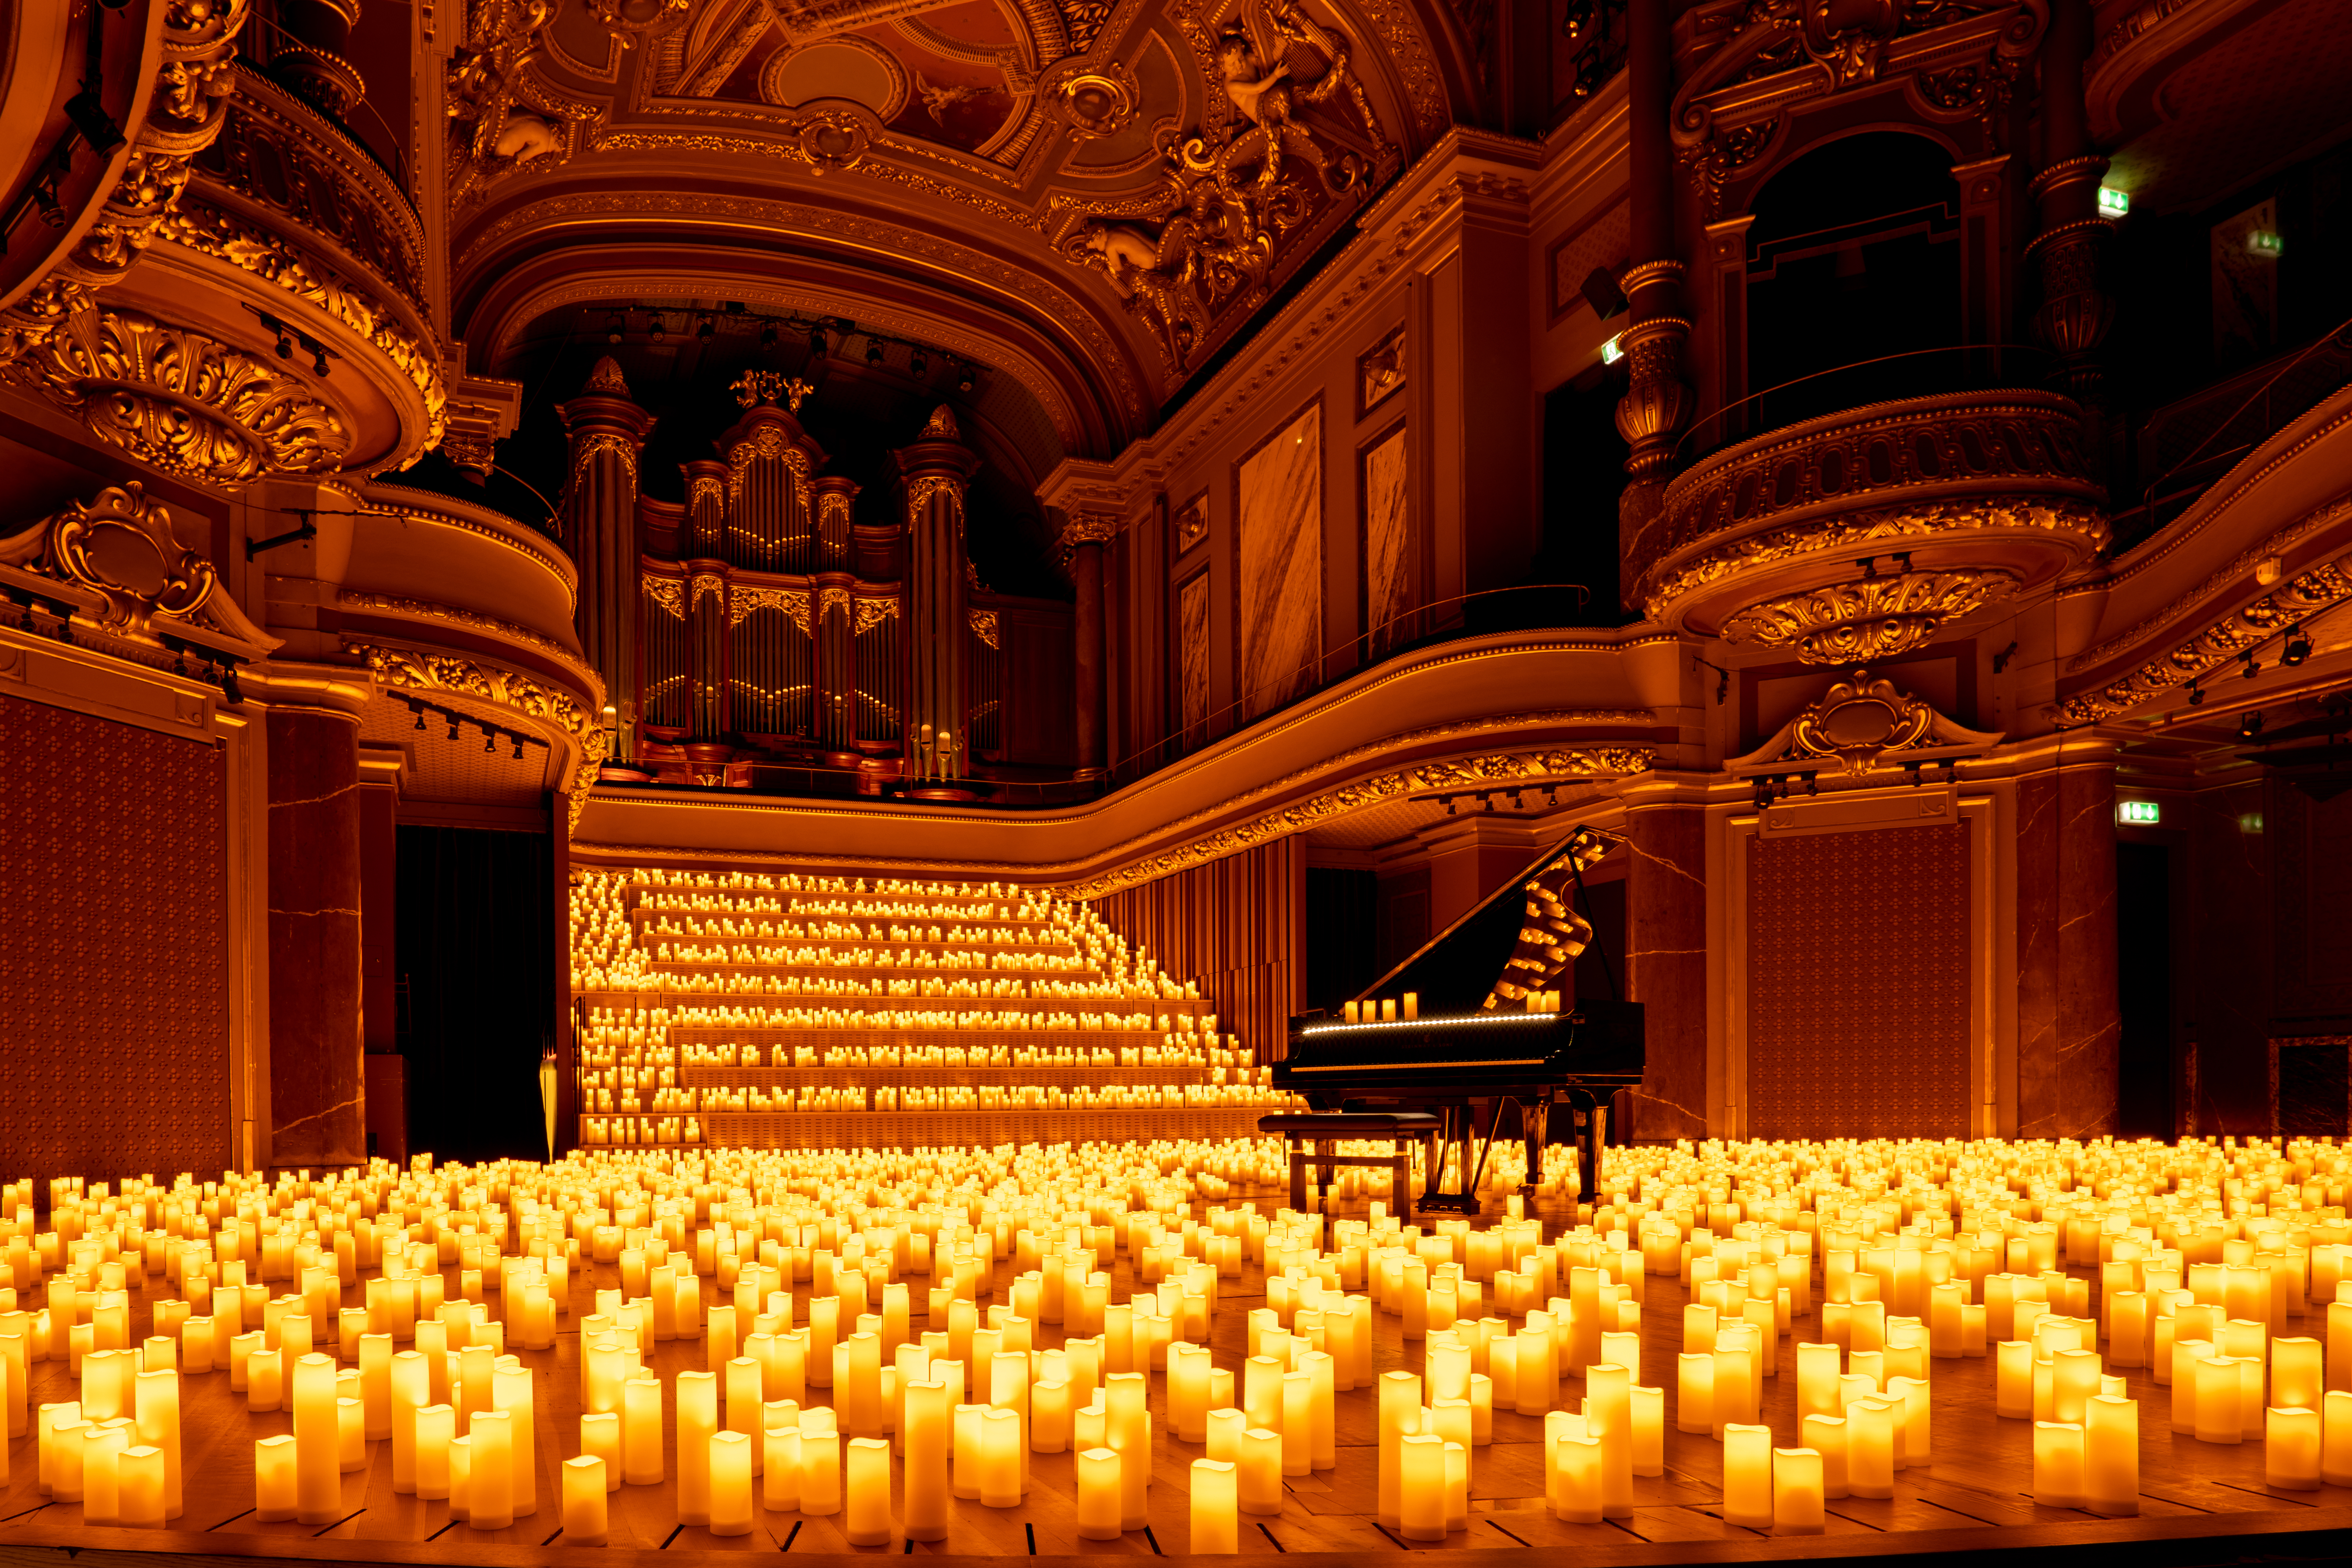 Candlelight: concertos à luz de velas em SP